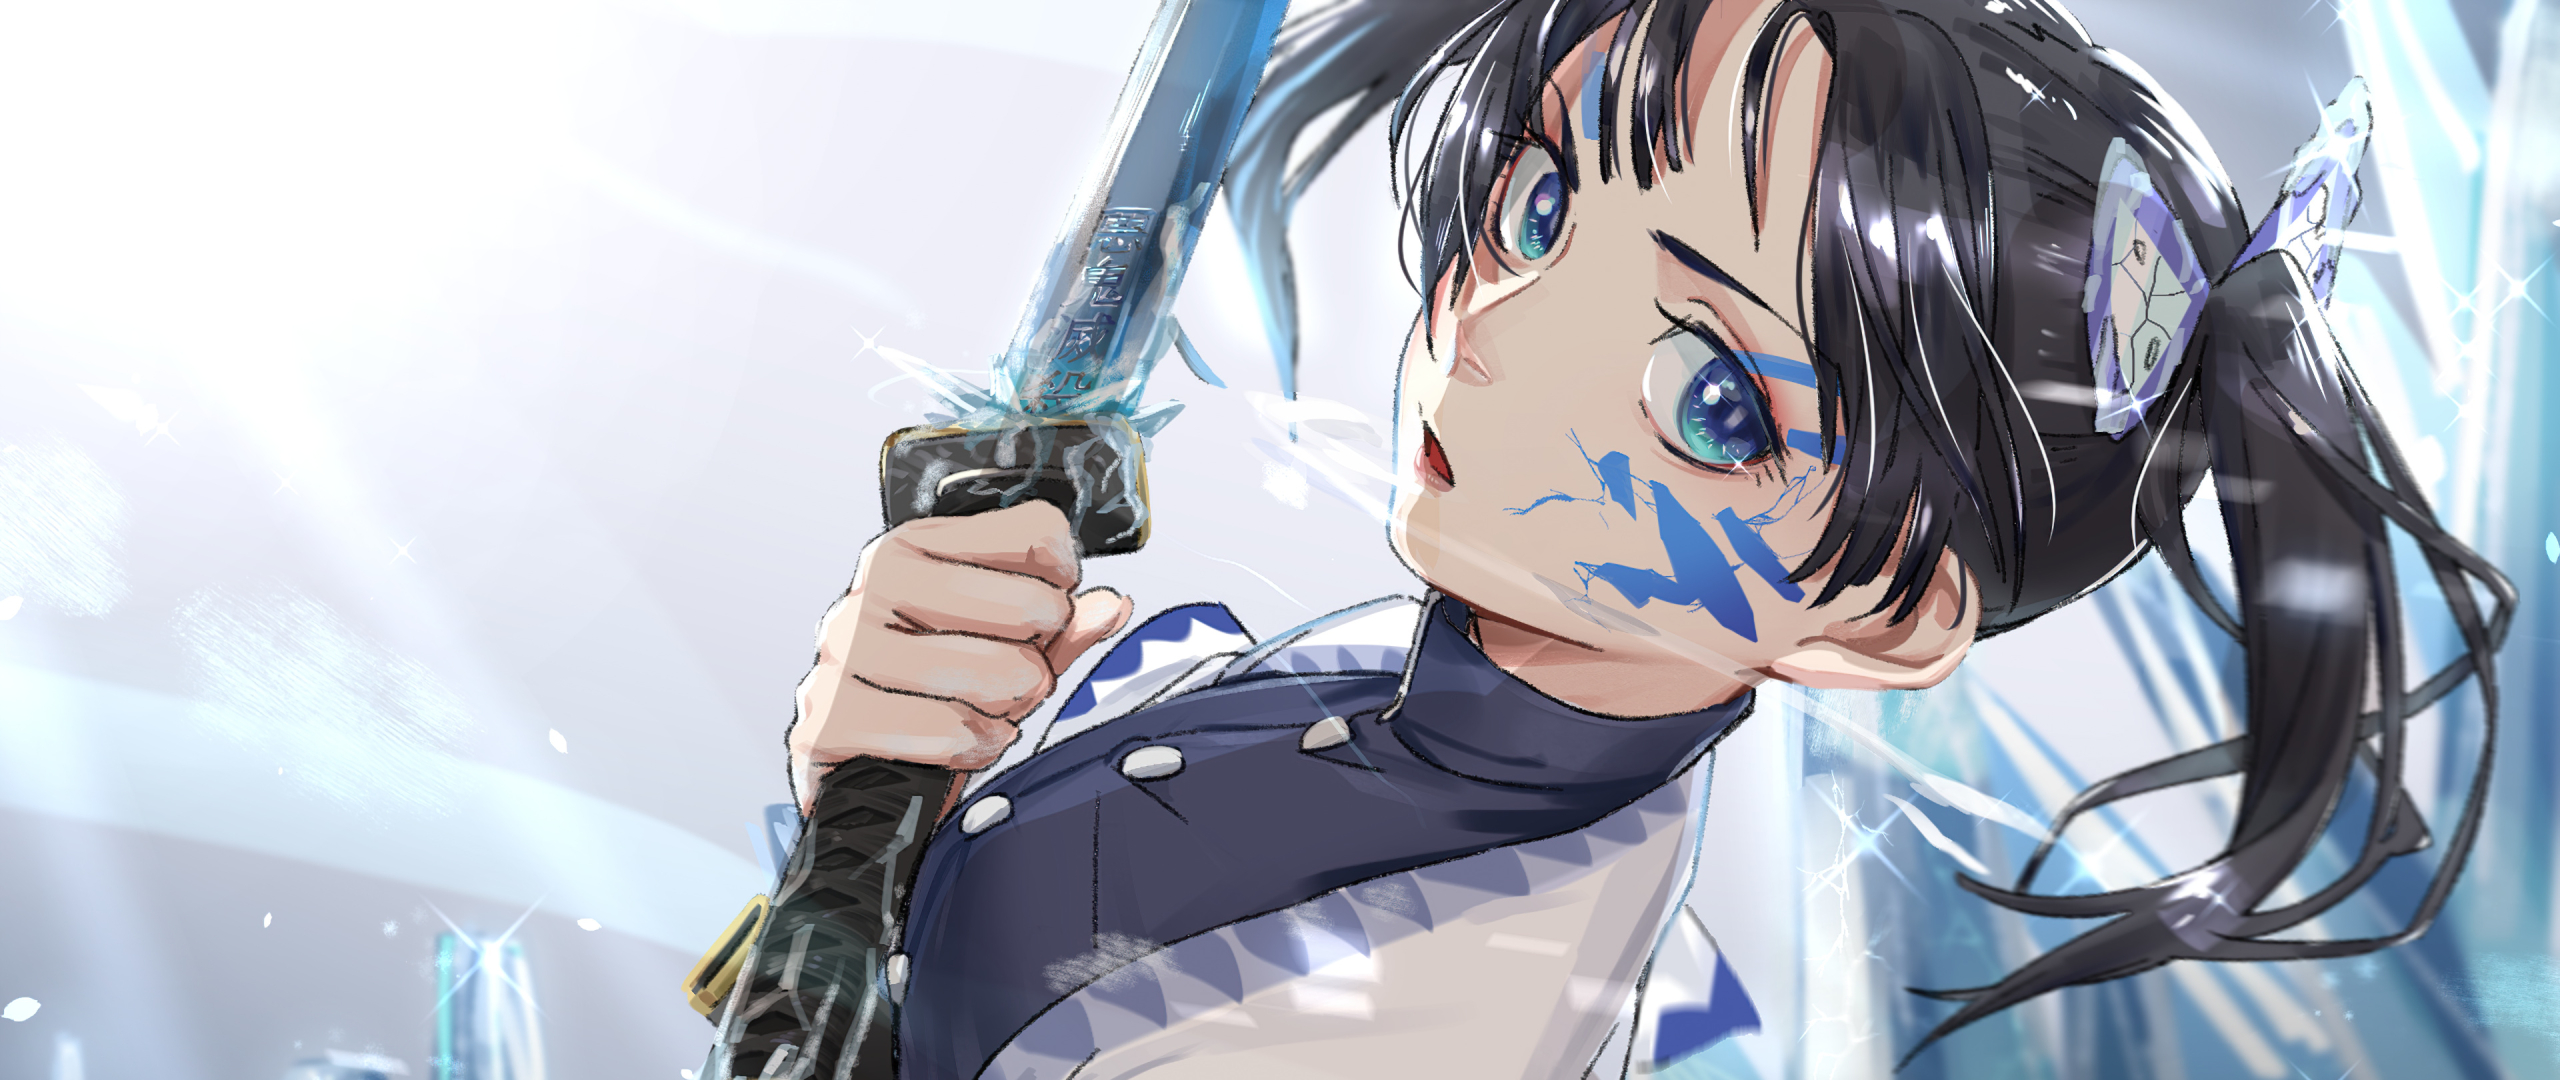 2560x1080 Aoi Kanzaki Demon Slayer 2560x1080 Resolution Wallpaper, HD Anime 4K Wallpapers ...